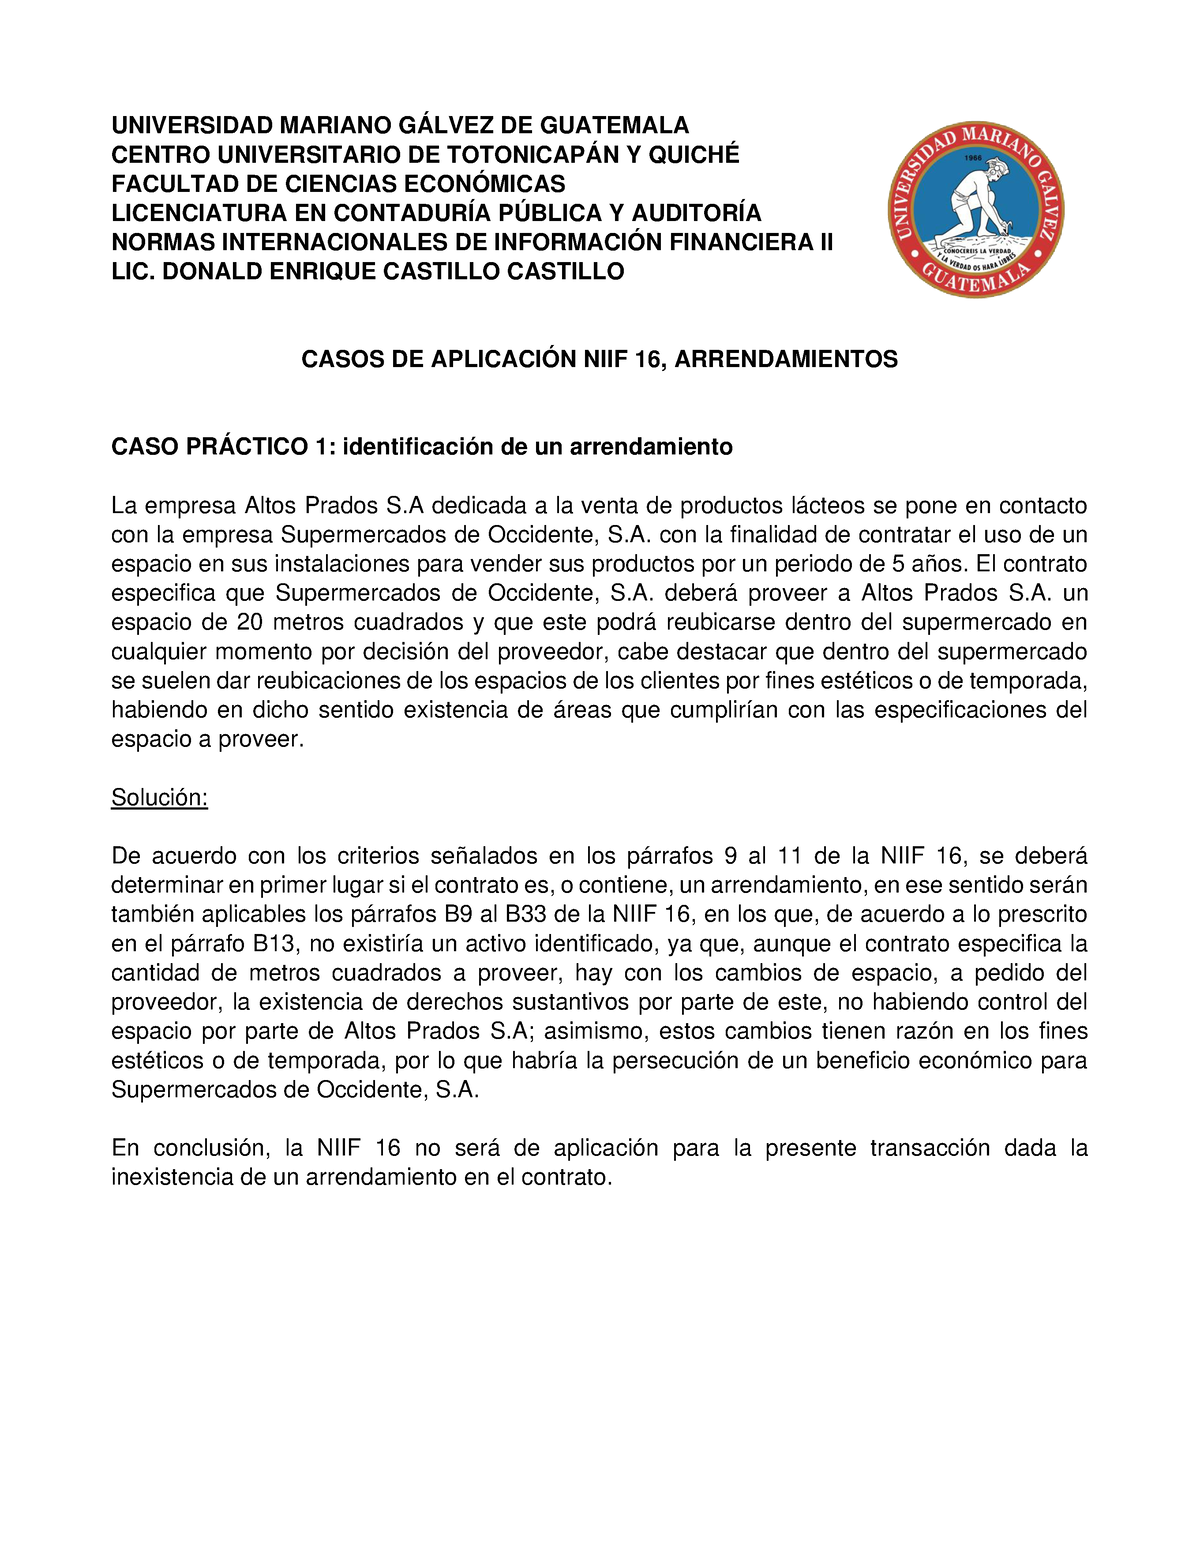 Casos Prácticos De Análisis Niif 16 Universidad Mariano GÁlvez De Guatemala 7058